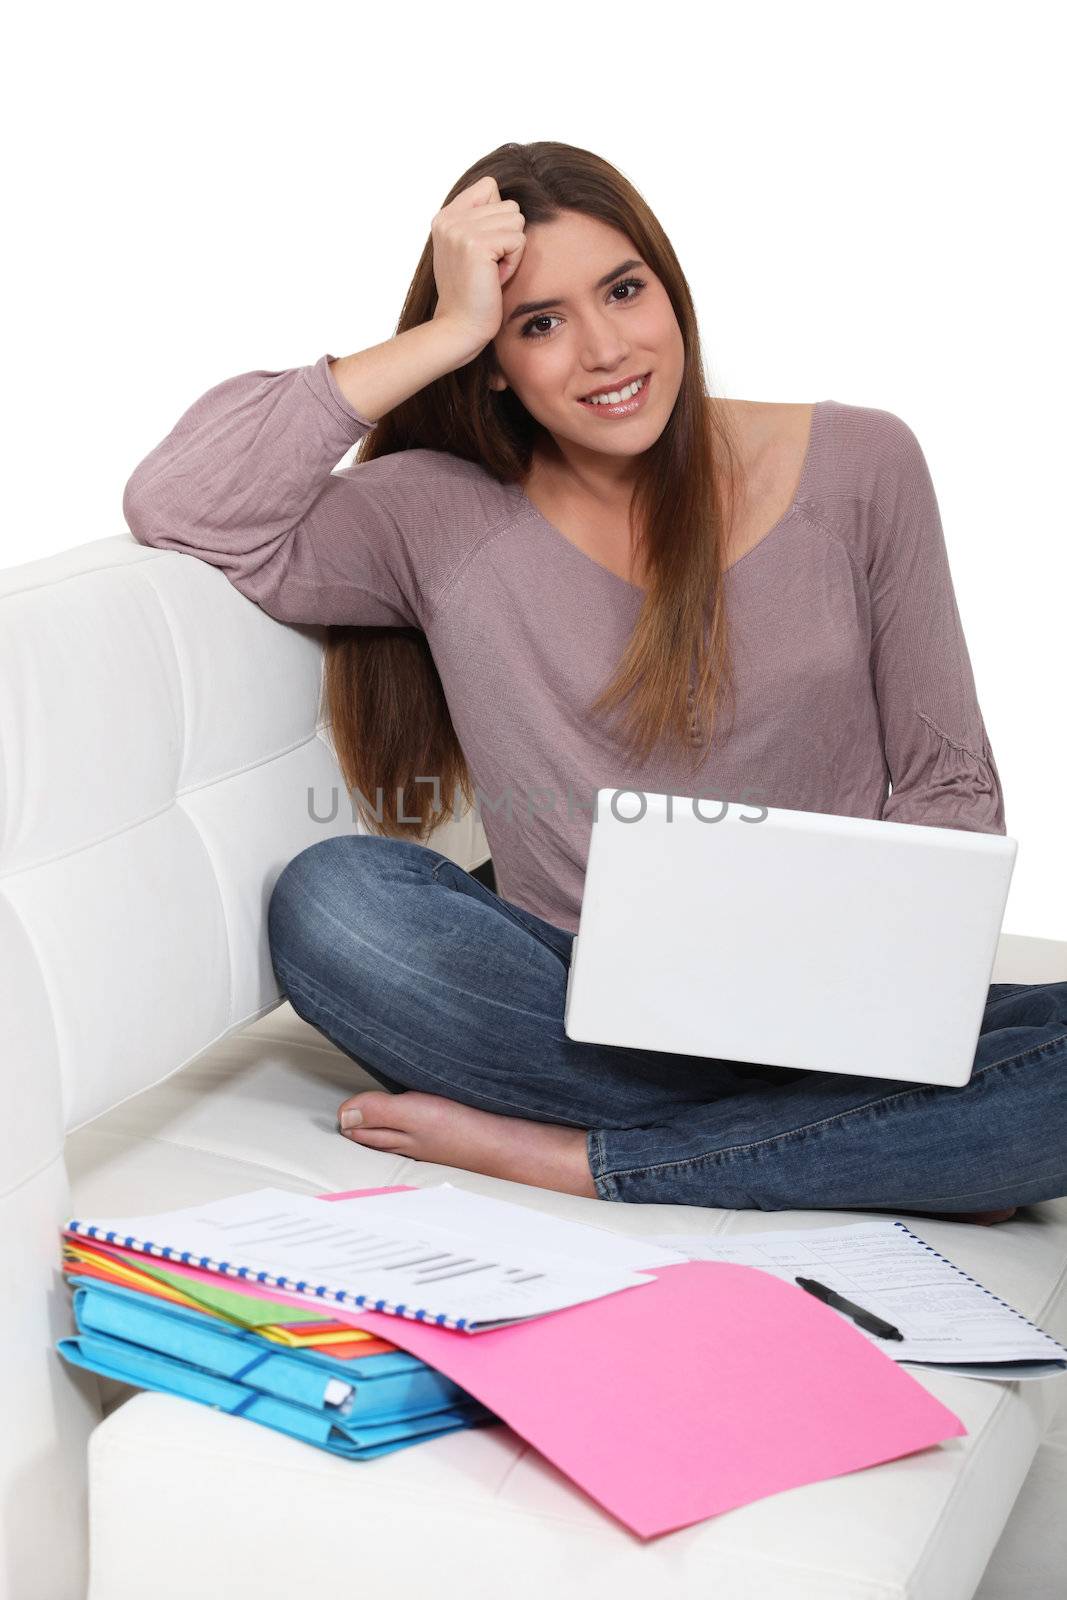 Girl doing homework by phovoir